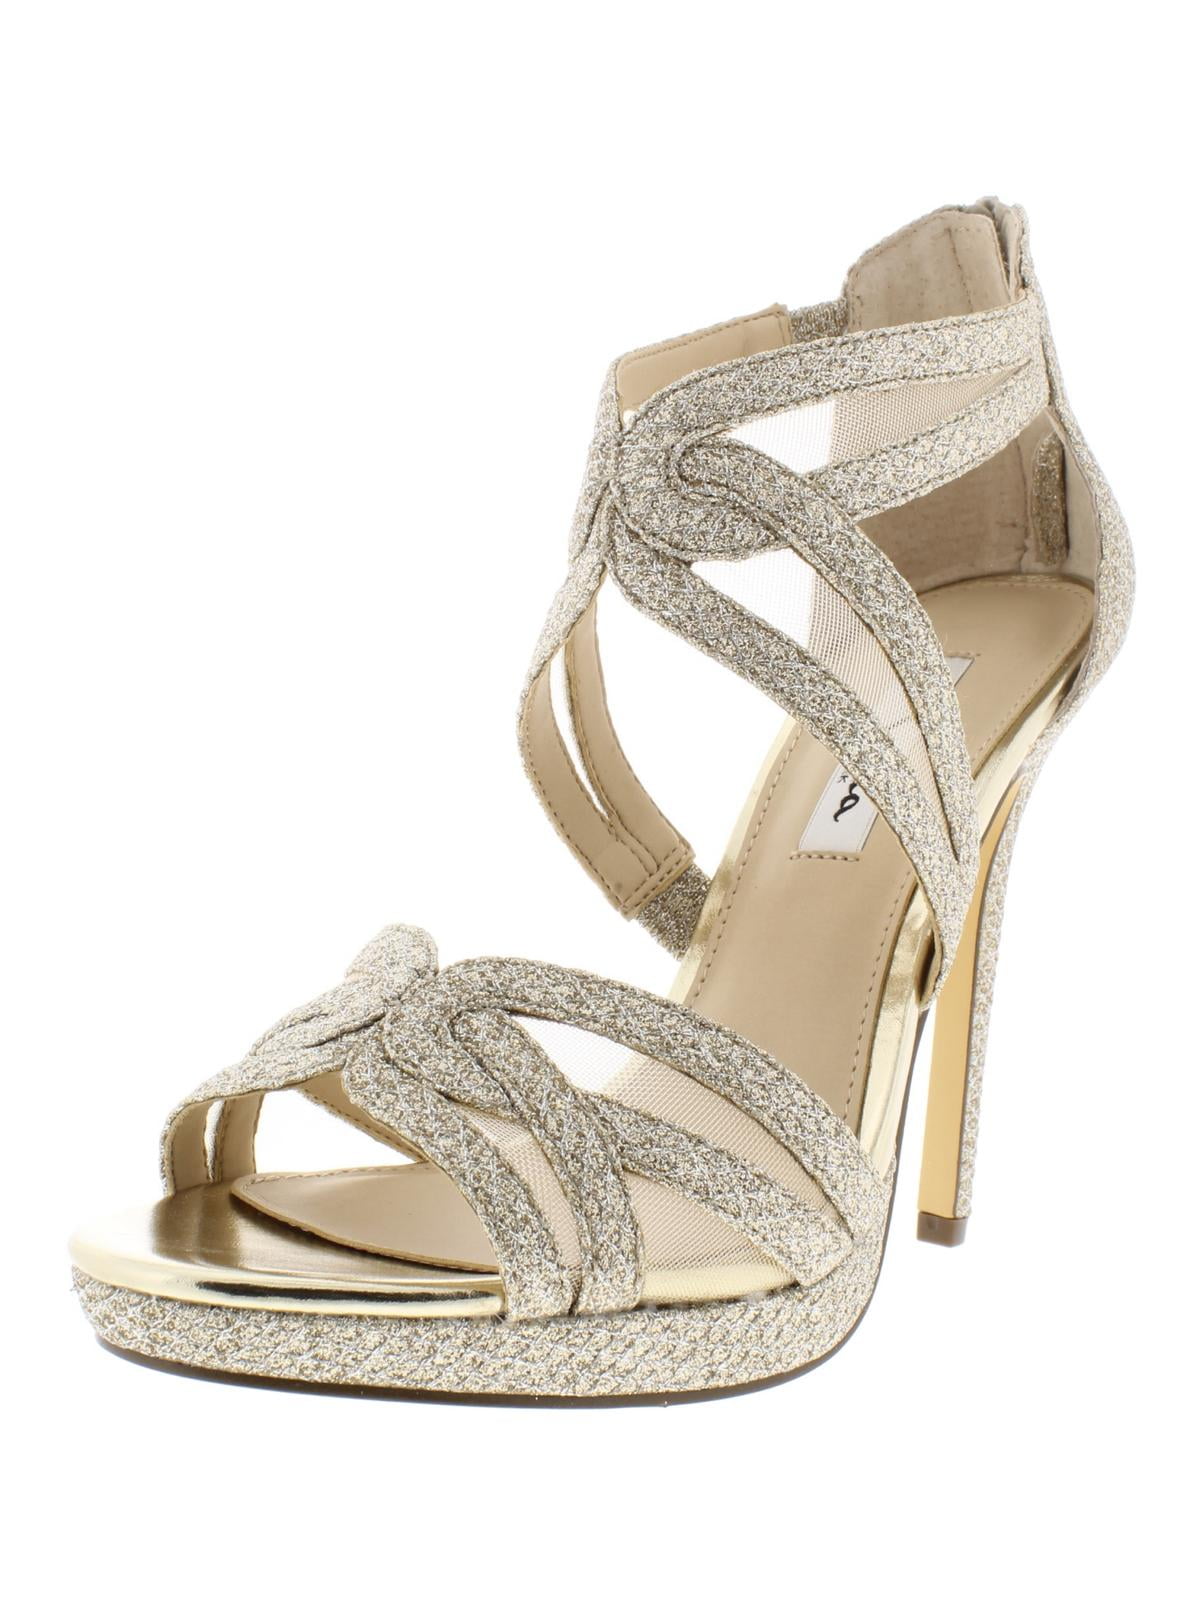 gold medium heels